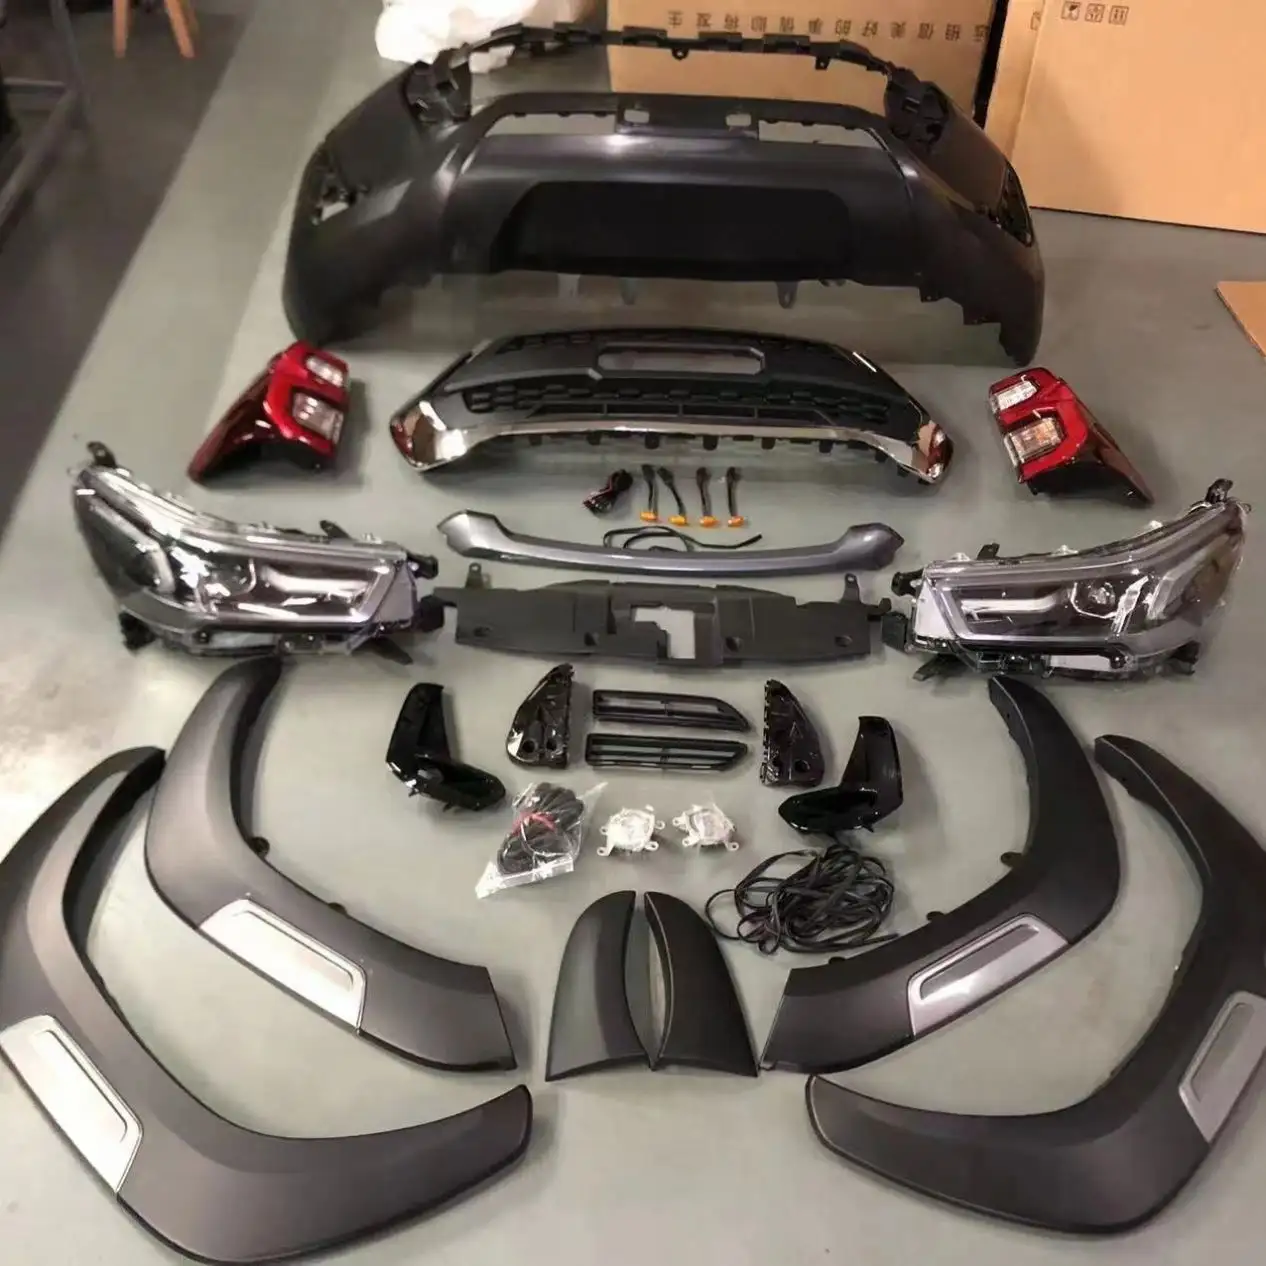 Kit carrozzeria fanale posteriore a Led Facelift per auto con paraurti anteriore e posteriore per Toyota Hilux Vigo 2005-2015 a Rocco 2018